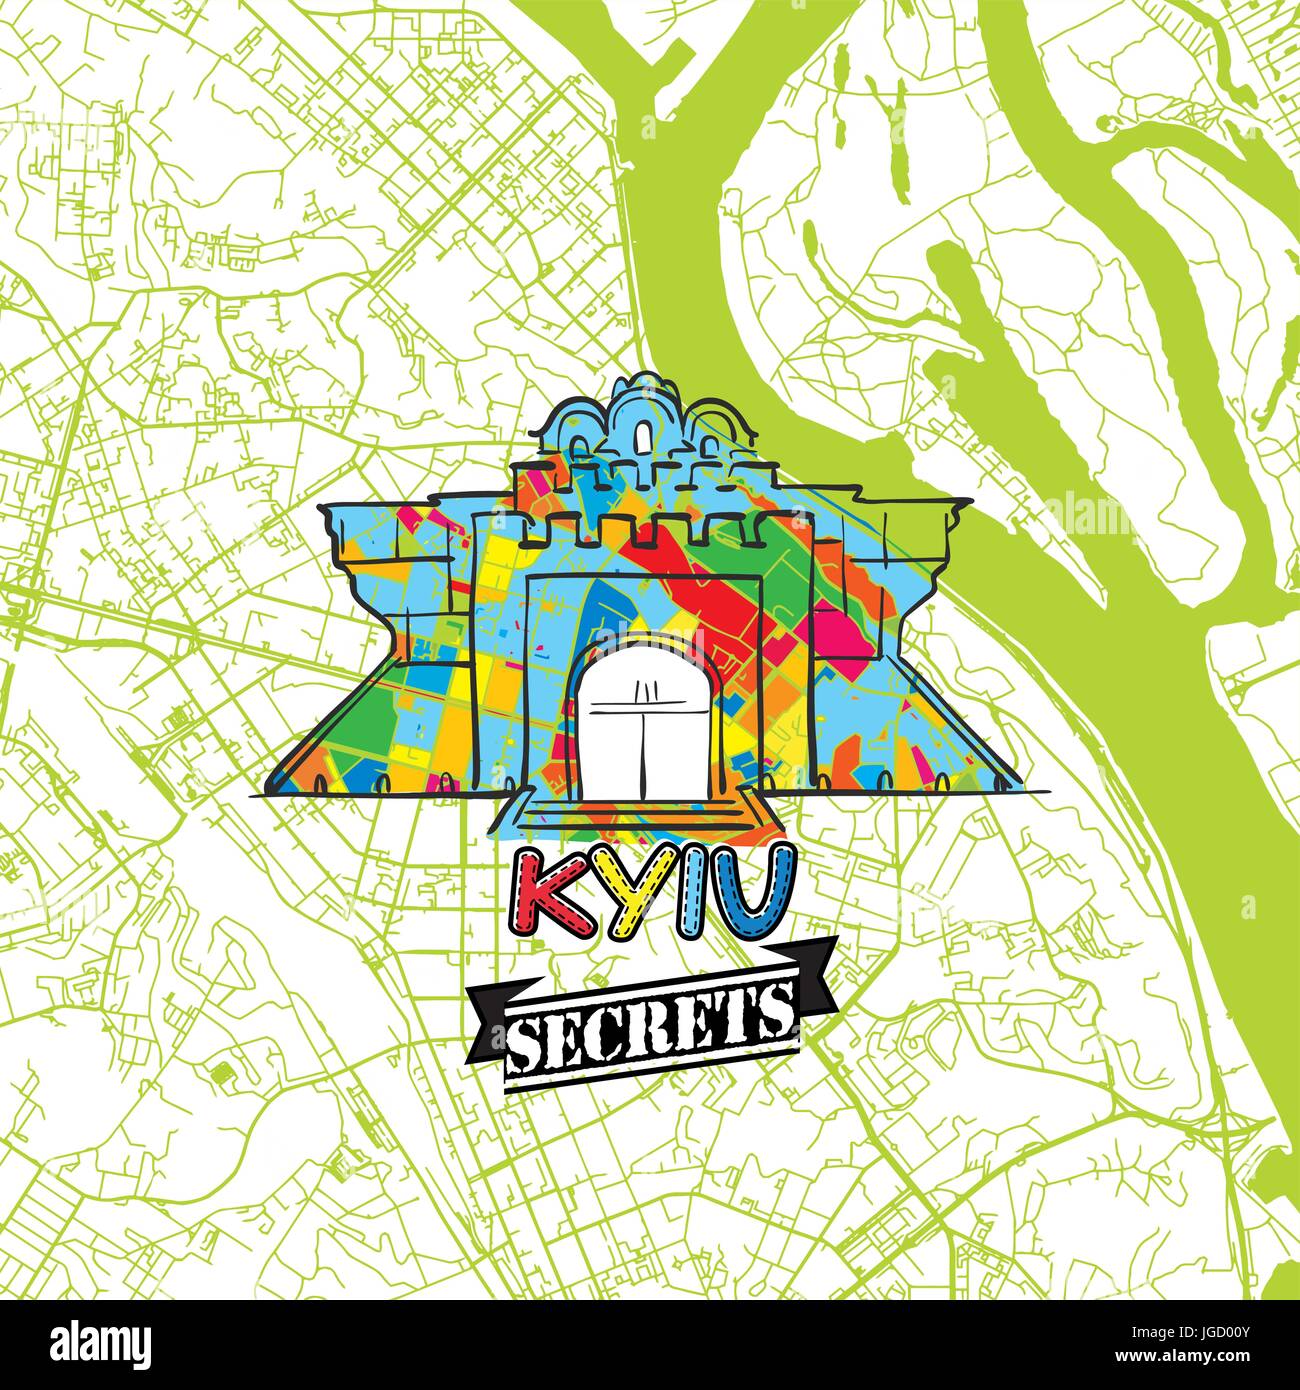 Kiew Reisen Geheimnisse Art Map für die Zuordnung von Experten und Reiseführer. Handgemachte Stadt Logo, Typo-Abzeichen und Hand gezeichnete Vektorbild auf Top sind gruppiert und m Stock Vektor